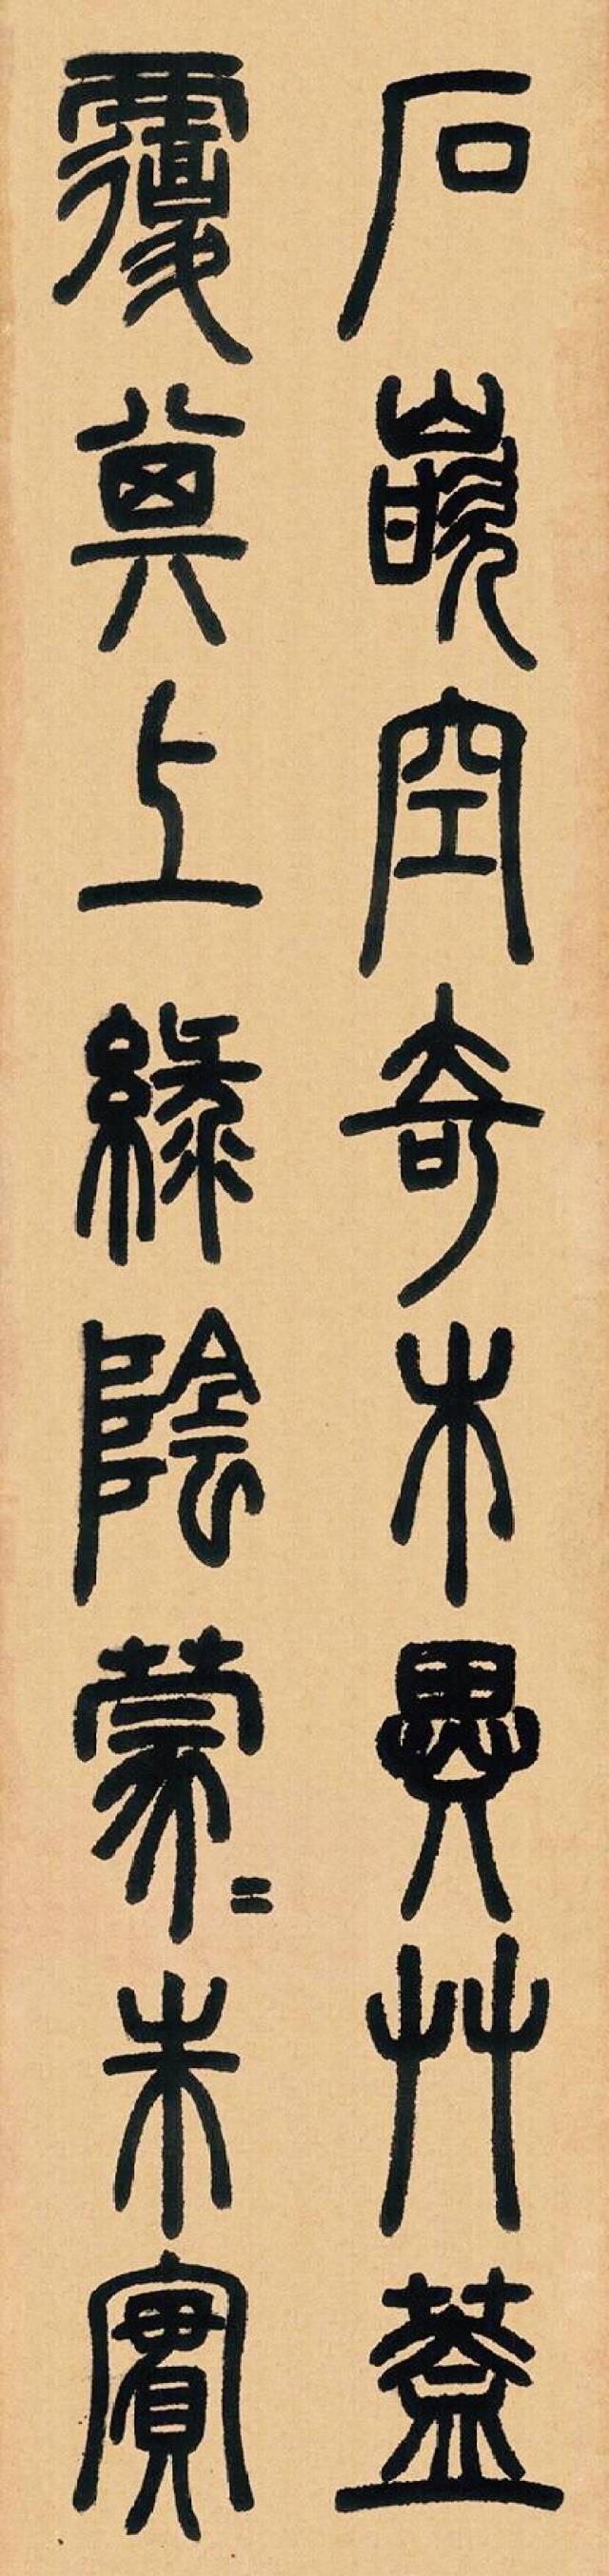 邓石如大师的篆书书法作品欣赏,喜欢的拿走不谢